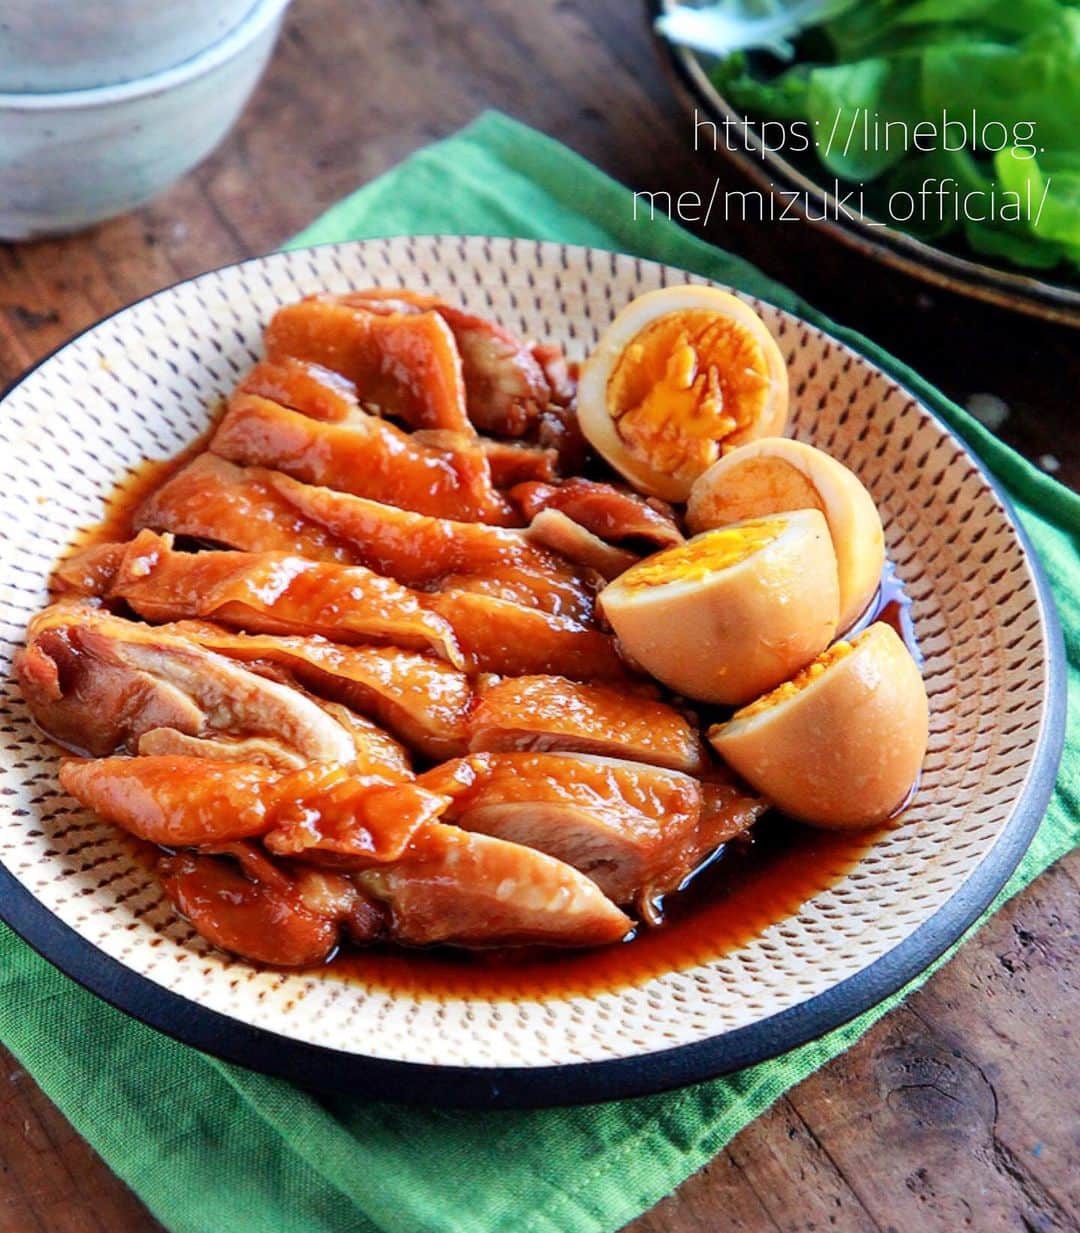 Mizuki【料理ブロガー・簡単レシピ】さんのインスタグラム写真 - (Mizuki【料理ブロガー・簡単レシピ】Instagram)「・﻿ 【レシピ】ーーーーーーー﻿ ♡煮るだけ簡単♡﻿ 鶏肉とたまごの照り煮﻿ ーーーーーーーーーーーー﻿ ﻿ ﻿ おはようございます(*^^*)﻿ ﻿ 今日ご紹介させていただくのは﻿ 鶏肉とたまごの照り煮♡﻿ 材料ぜんぶ入れて煮るだけの﻿ 超簡単レシピです(*´艸`)﻿ 煮汁にお酢を加えること﻿ そして弱火で煮ることで﻿ 鶏肉が柔らか〜く仕上がりますよ♩﻿ お酢の酸味は残らず﻿ コクと旨味がアップします♡﻿ ﻿ そのまま食べたり、ごはんにのせたり﻿ 作り置きにもおすすめなので﻿ よかったらお試し下さいね(*^^*)﻿ ﻿ ﻿ ﻿ ーーーーーーーーーーーーーーーーーーー﻿ 【2人分】﻿ 鶏もも肉...大1枚(300g)﻿ ゆで卵...2個﻿ ●醤油...大3﻿ ●酒・みりん...各大2﻿ ●砂糖...大1.5﻿ ●酢...大1﻿ ﻿ 1.鶏肉は身の厚い部分を包丁で開いて均等にする。﻿ 2.鍋に●を入れて混ぜ、鶏肉とゆで卵も加えて中火にかける。煮立ったらフタをし、弱火で15〜18分、途中2回ほど上下を返しながら煮る。﻿ ーーーーーーーーーーーーーーーーーーー﻿ ﻿ ﻿ ﻿ 《ポイント》﻿ ♦︎煮汁が多めに残る場合は、鶏肉とたまごを取り出した後煮汁だけを煮詰めて下さい♩﻿ ♦︎冷蔵庫で3〜4日日持ちします♩﻿ ﻿ ﻿ ﻿ ﻿ ﻿ ＿＿＿＿＿＿＿＿＿＿＿＿＿＿＿＿＿＿＿﻿ ＿＿＿＿＿＿＿＿＿＿＿＿＿＿＿＿＿＿＿﻿ ﻿ 簡単・時短！ 毎日のごはんがラクになる﻿ ✨🦋 【 #Mizukiの今どき和食 】🦋✨﻿ ご予約開始となりました♩(発売日 4月2日)﻿ ＿＿＿＿＿＿＿＿＿＿＿＿＿＿＿＿＿＿＿﻿ ﻿ なるべく少ない材料で﻿ 手間も時間も省きながら﻿ 簡単にできるおいしい和食レシピ♩﻿ 簡単に失敗なくマスターできる一冊で﻿ もっと気軽に、カジュアルに﻿ 和食を楽しんで下さいね(*^^*)﻿ ﻿ ﻿ ーーー ⭐️PART.1 メインおかず ⭐️ーーー﻿ 素材別にレシピをご紹介しています♩﻿ 和食の定番から新定番まで﻿ どれも押さえておきたいメニューばかり。﻿ 肉じゃがはフライパンで！﻿ 焼き豚はレンジで！﻿ ぶり大根は切り身を使って手軽に作ります♩﻿ ﻿ ーーー ☘️PART.2 サブおかず ☘️ーーー﻿ 年中手に入るお手頃野菜と﻿ 乾物や大豆、こんにゃくなどを使った﻿ 副菜レシピをたっぷり掲載！！﻿ 普段SNSではメインおかずばかりなので﻿ 本では副菜にも力を入れています(*^^*)﻿ ﻿ ーーー 🌸PART.3 ごはんと汁物 🌸ーーー﻿ ささっと作れる丼と麺、﻿ みんなで食べたいいなり寿司や﻿ 手巻きごはんもご紹介！﻿ 複数の炊き込みごはんと﻿ 味噌汁&和風スープも盛りだくさん！﻿ ﻿ ﻿ 各レシピのポイントは﻿ 【写真付きで丁寧に解説】﻿ 副菜レシピもたっぷりなので﻿ 【メインページに副菜メモもつけました】﻿ ＊このメインにはこの副菜が合いますよ〜﻿ という献立の提案です(*^^*)﻿ 【その他コラムも充実】﻿ 全127品中ほぼ全て﻿ 【本だけのレシピです！】﻿ ﻿ ＿＿＿＿＿＿＿＿＿＿＿＿＿＿＿＿＿＿＿﻿ ﻿ ﻿ ｟🎁予約プレゼント企画のお知らせ🎁｠﻿ ﻿ 新刊【今どき和食】をAmazonで予約し﻿ インスタに写真をアップして下さった方に﻿ 抽選で(20名様) ''お米''を﻿ プレゼントさせていただきます☆﻿ (応募方法は写真をご覧下さい♩)﻿ ﻿ ＿＿＿＿＿＿＿＿＿＿＿＿＿＿＿＿＿＿＿﻿ ＿＿＿＿＿＿＿＿＿＿＿＿＿＿＿＿＿＿＿﻿ ﻿ ﻿ ﻿ ﻿ レシピ本/ブログはこちら↓﻿ (@mizuki_31cafe )﻿ ﻿ ﻿ ﻿ ﻿ #鶏肉#ゆで卵#甘辛#作り置き#Mizuki#簡単レシピ#時短レシピ#節約レシピ#料理#レシピ#フーディーテーブル#おうちごはん#おうちカフェ#デリスタグラマー#料理好きな人と繋がりたい#料理ブロガー#おうちごはんlover#マカロニメイト#器#foodpic#follow#cooking#recipe#lin_stagrammer#鶏肉とたまごの照り煮m」3月11日 7時36分 - mizuki_31cafe